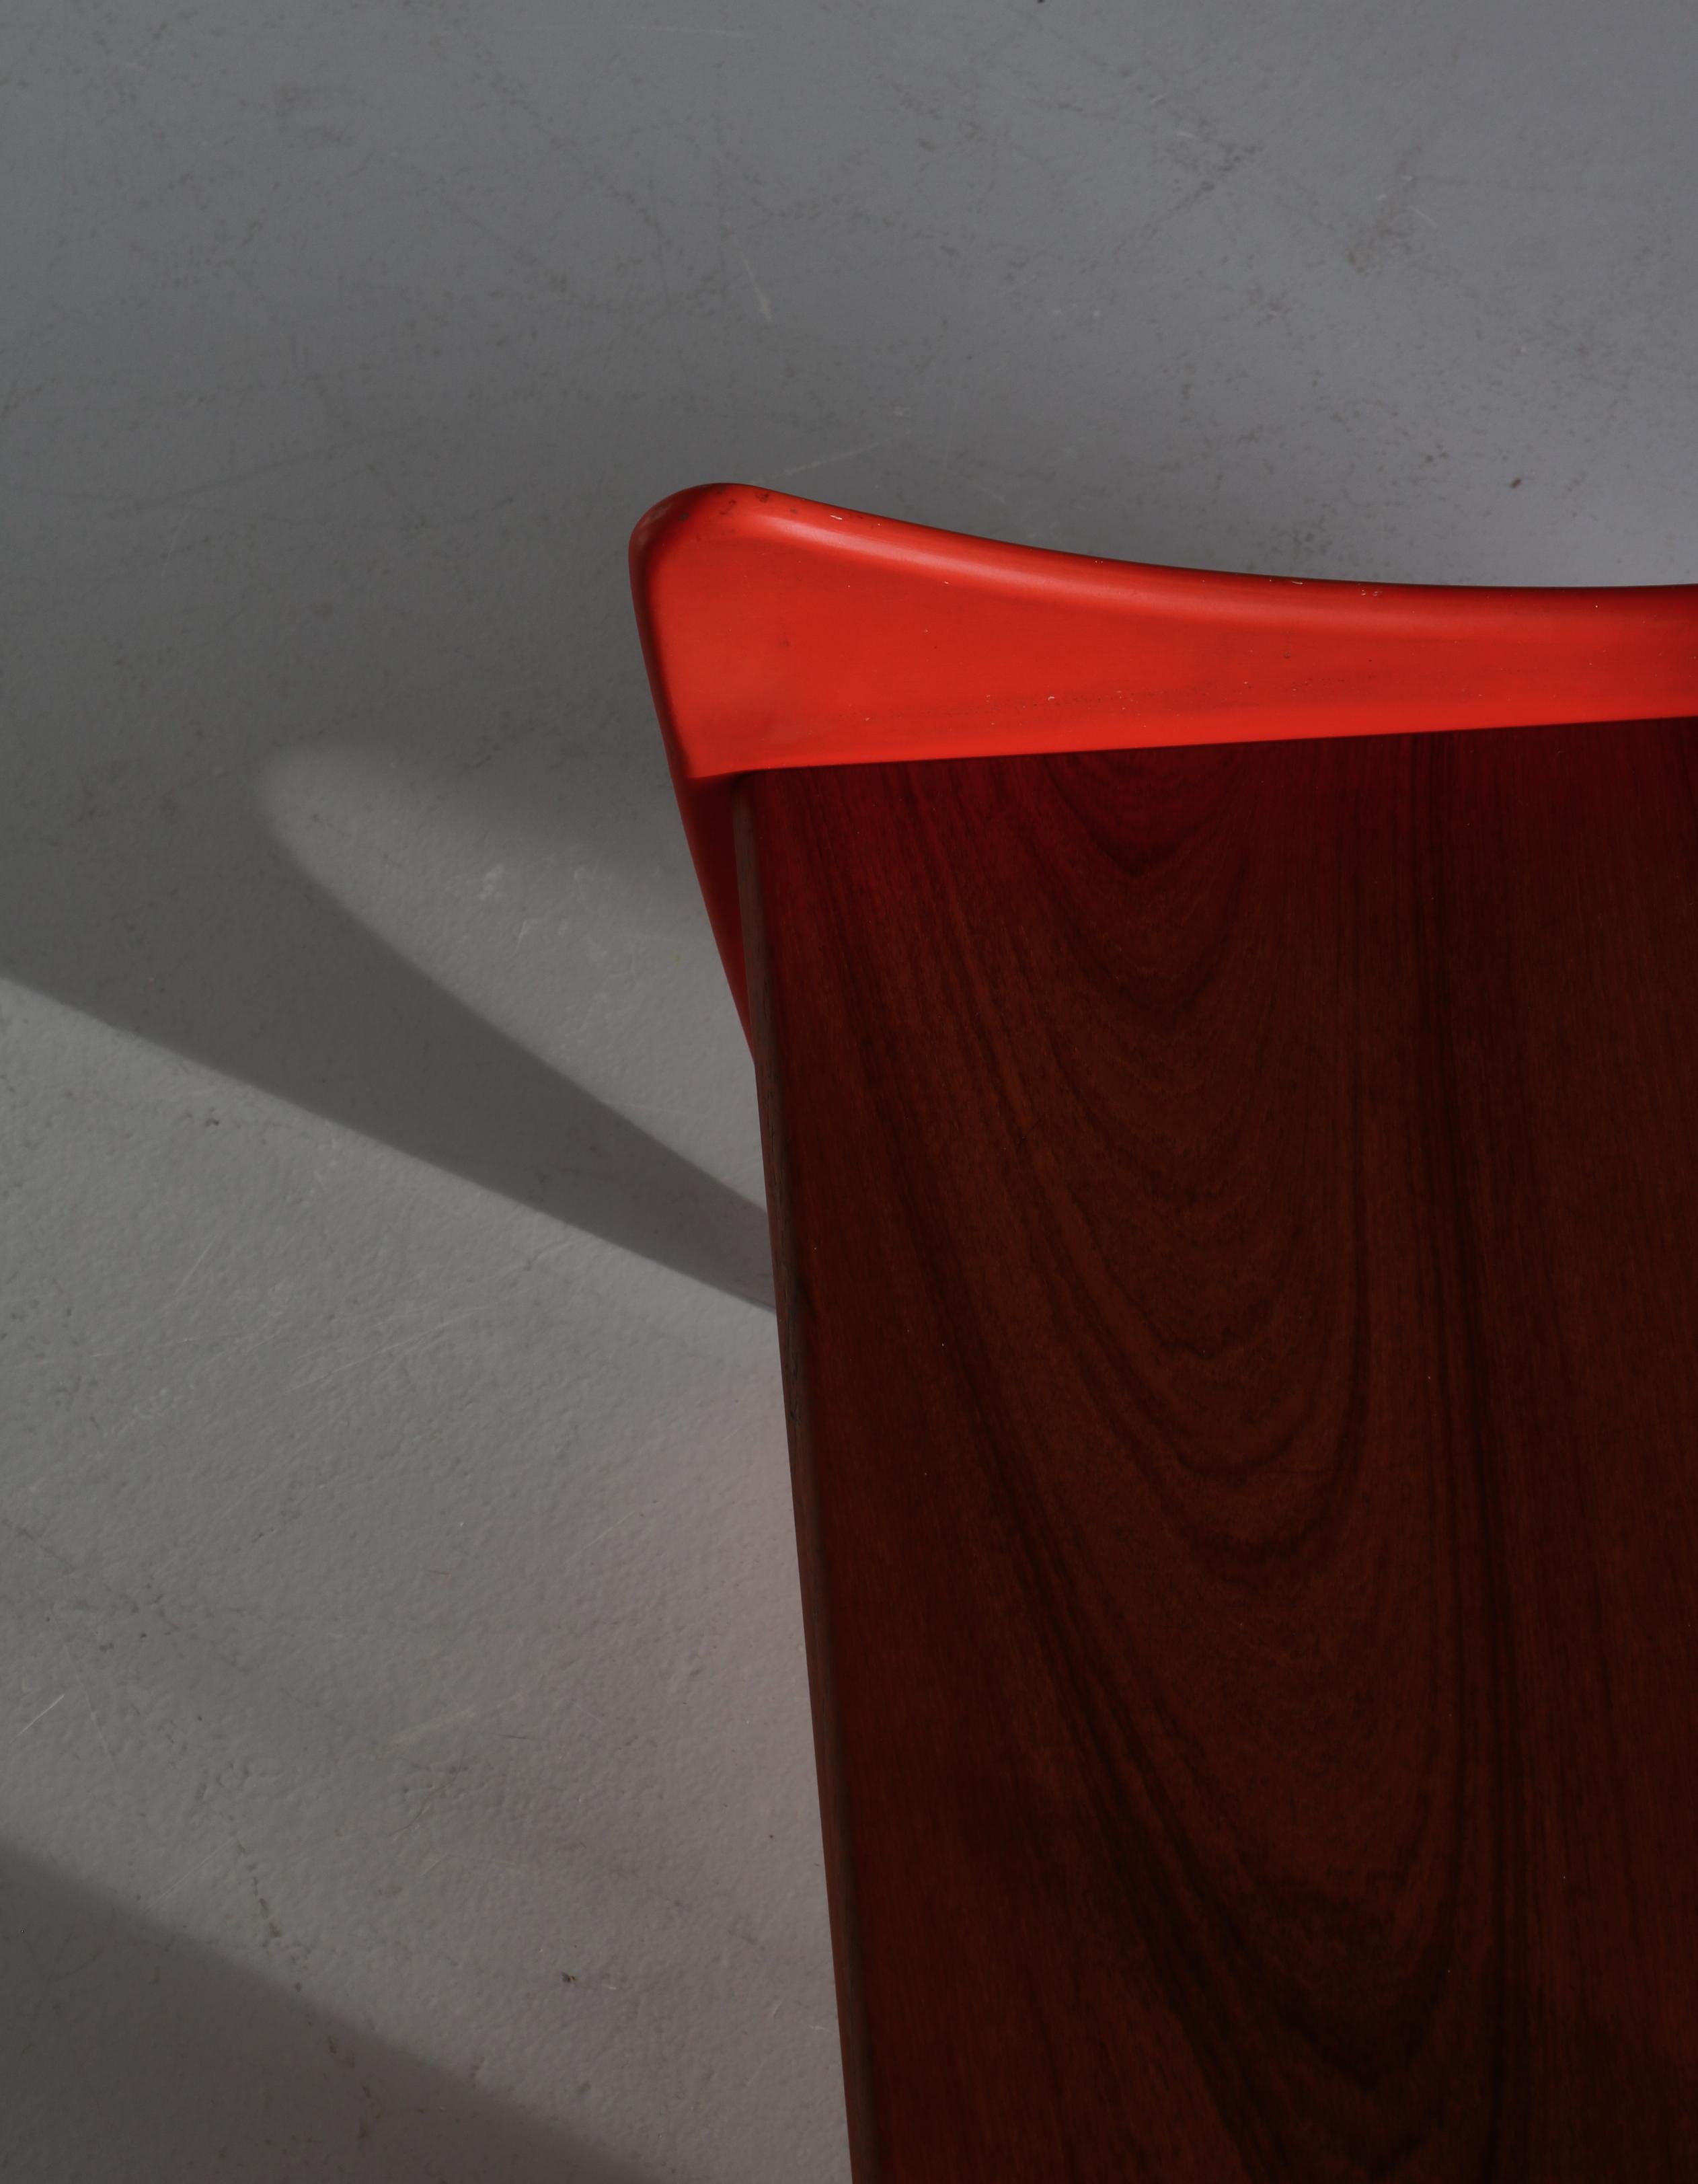 Scandinavian Modern Teak & Red Lacquered Stool / Side Table by Illum Wikkelsø 1